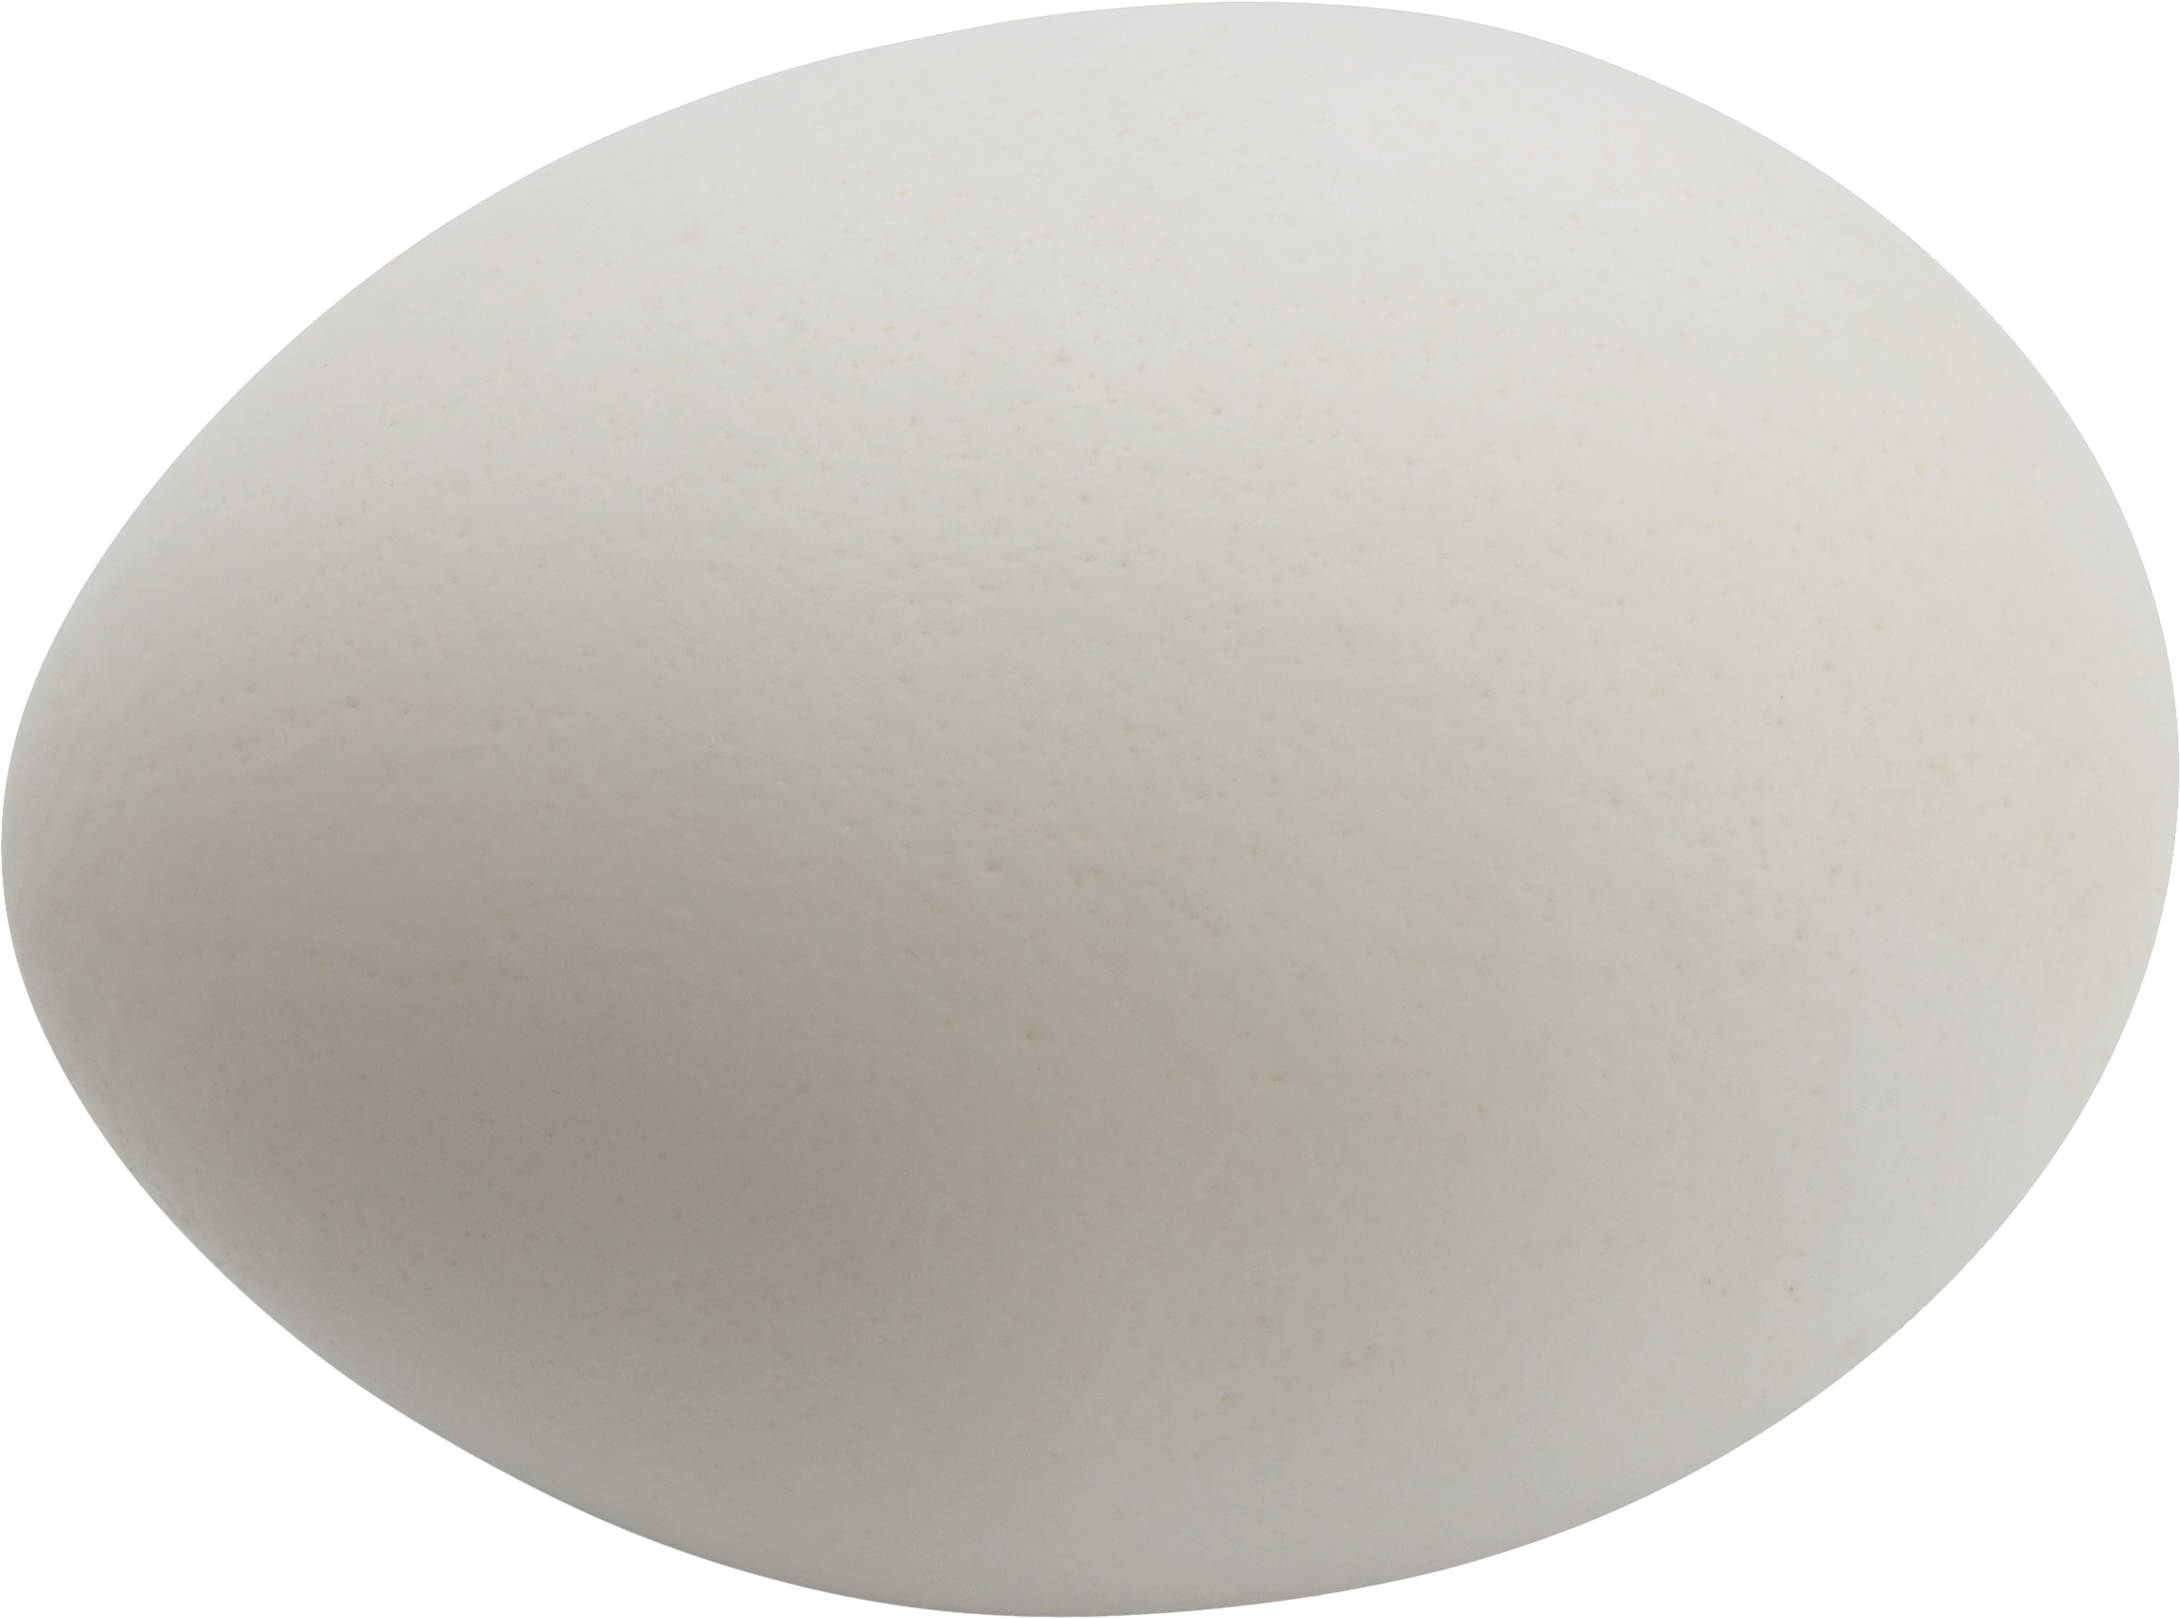 白色的蛋